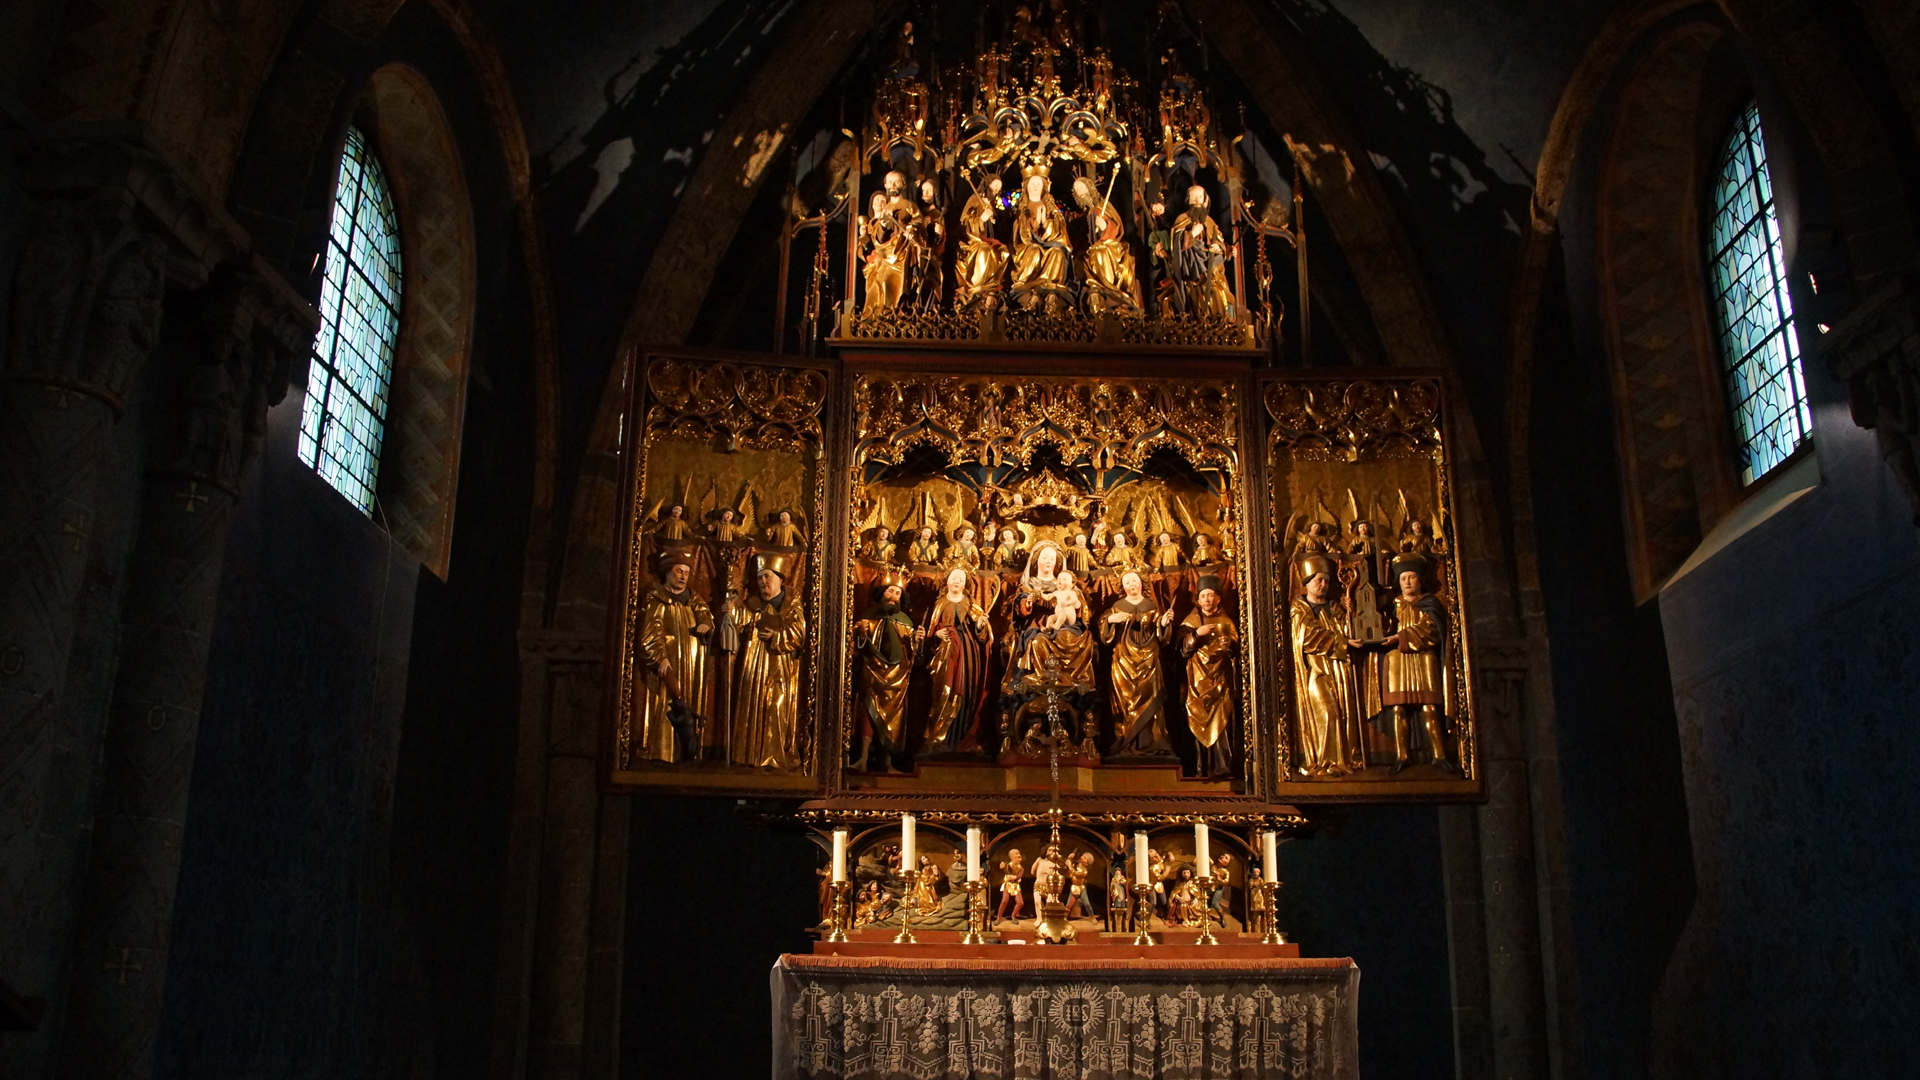 Schweiz 16: Altar in der Kathedrale von Chur